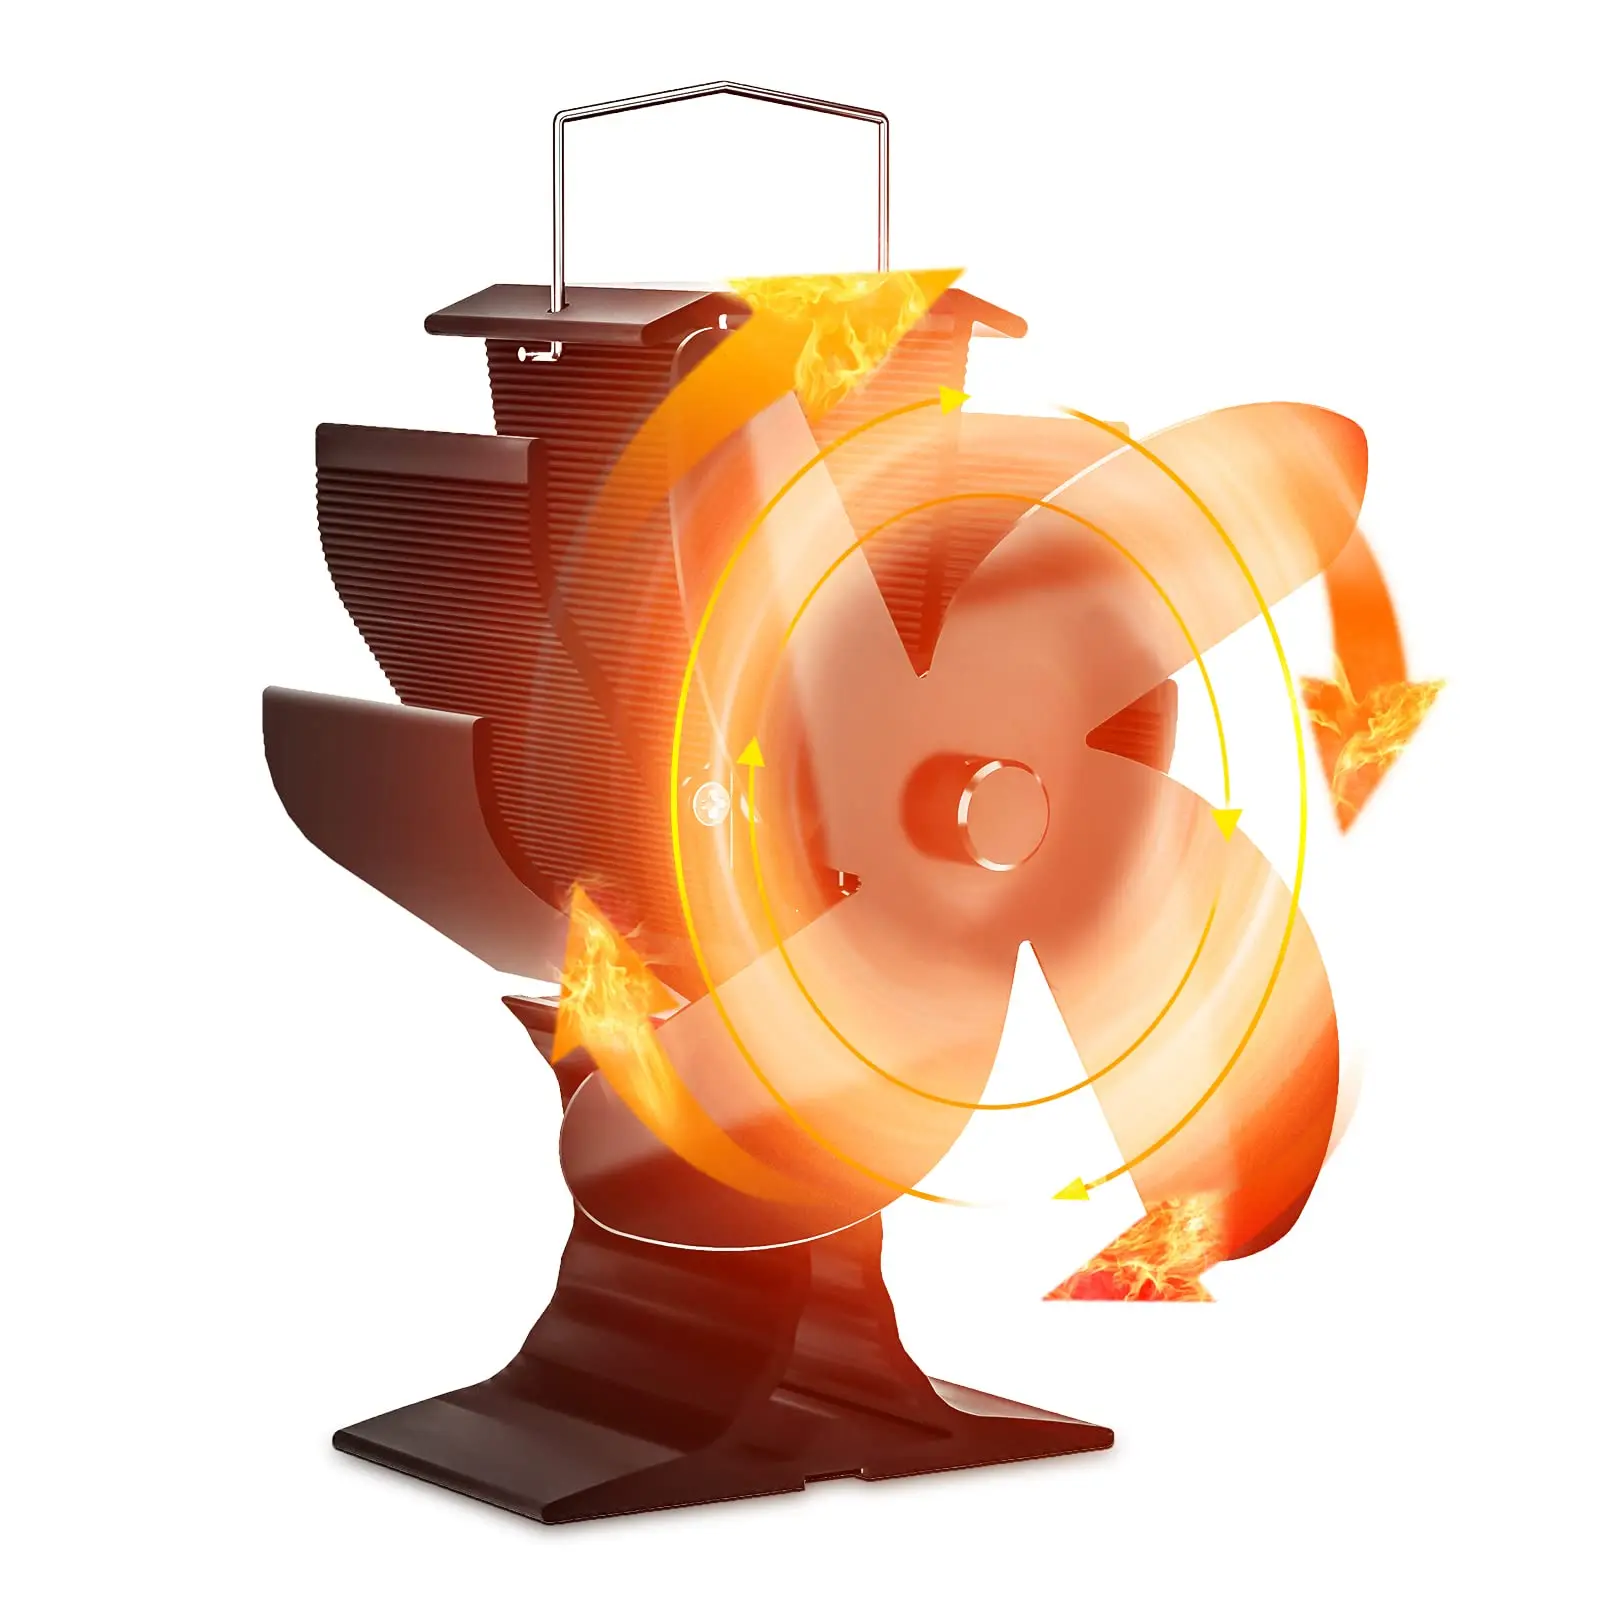 

Вентилятор для камина с 6 лопастями горячий вентилятор плиты без батареи или энергии бревен горелки Eco тихий черный вентилятор